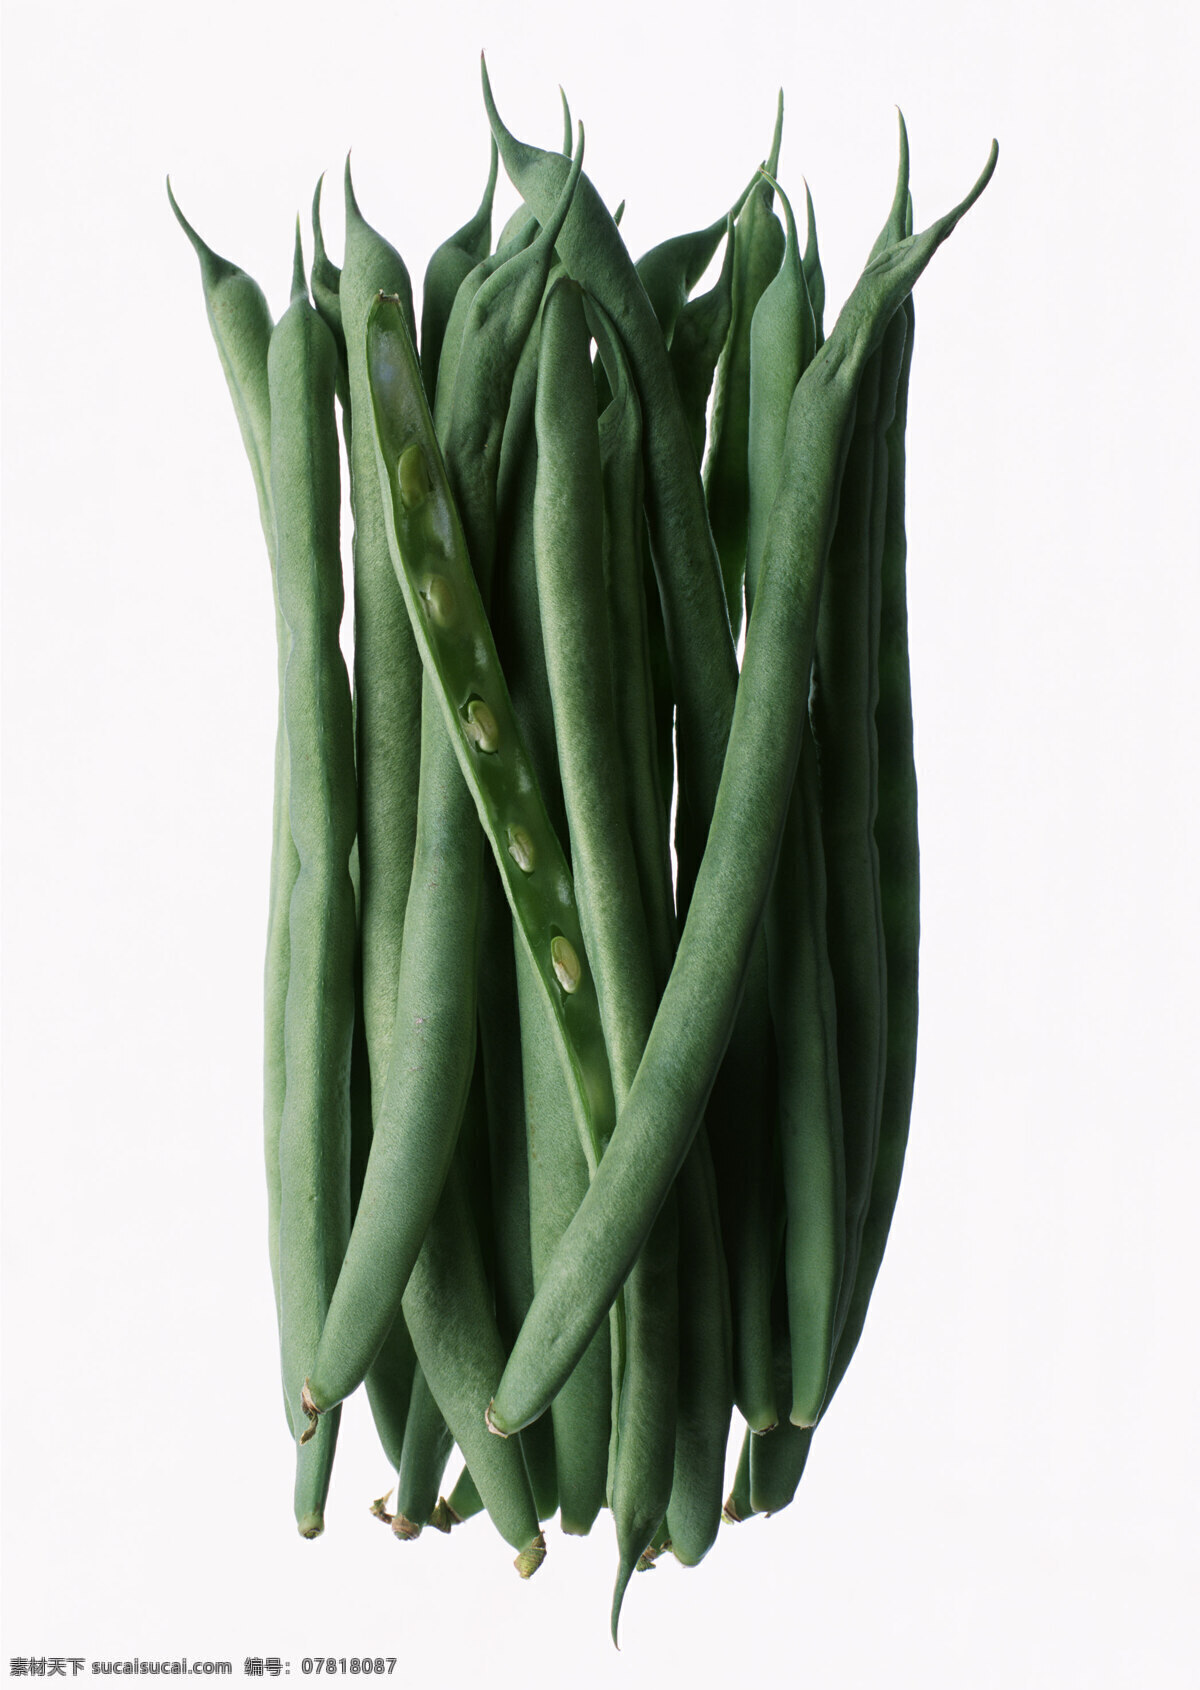 四季豆高清 新鲜蔬菜 四季豆 豆角 农作物 绿色食品 摄影图 高清图片 水果蔬菜 餐饮美食 白色